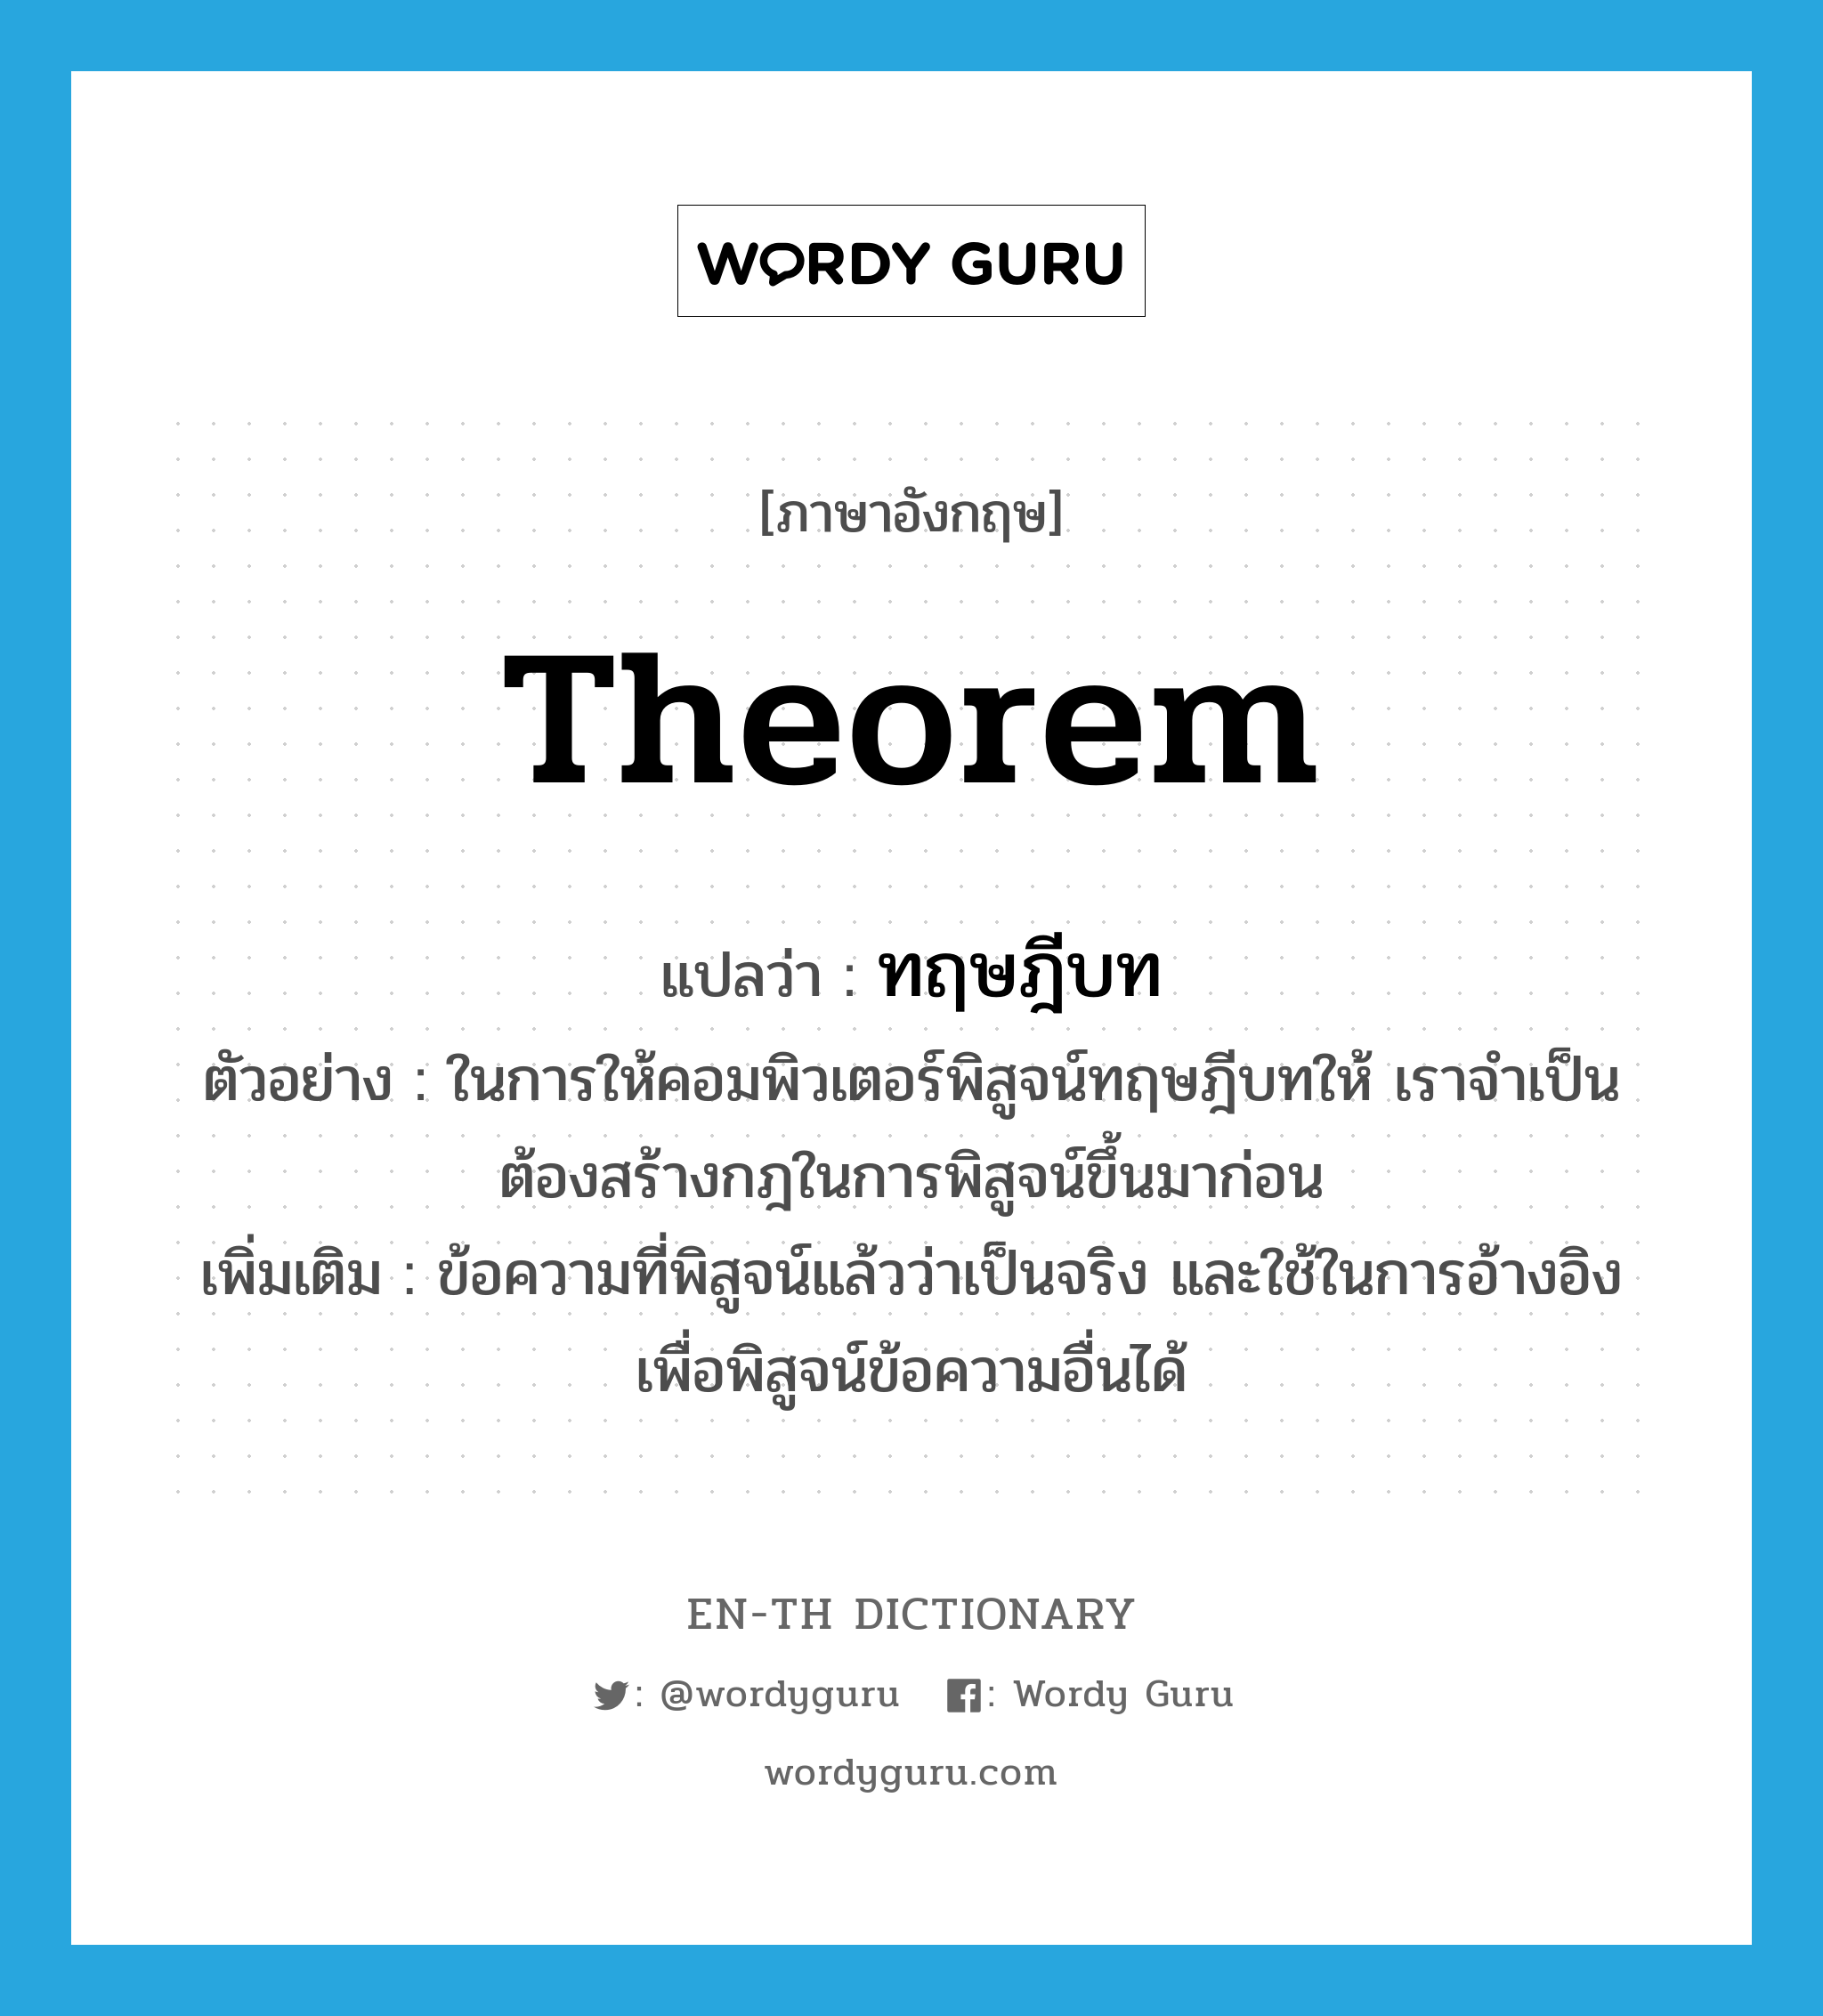 theorem แปลว่า?, คำศัพท์ภาษาอังกฤษ theorem แปลว่า ทฤษฎีบท ประเภท N ตัวอย่าง ในการให้คอมพิวเตอร์พิสูจน์ทฤษฎีบทให้ เราจำเป็นต้องสร้างกฎในการพิสูจน์ขึ้นมาก่อน เพิ่มเติม ข้อความที่พิสูจน์แล้วว่าเป็นจริง และใช้ในการอ้างอิงเพื่อพิสูจน์ข้อความอื่นได้ หมวด N